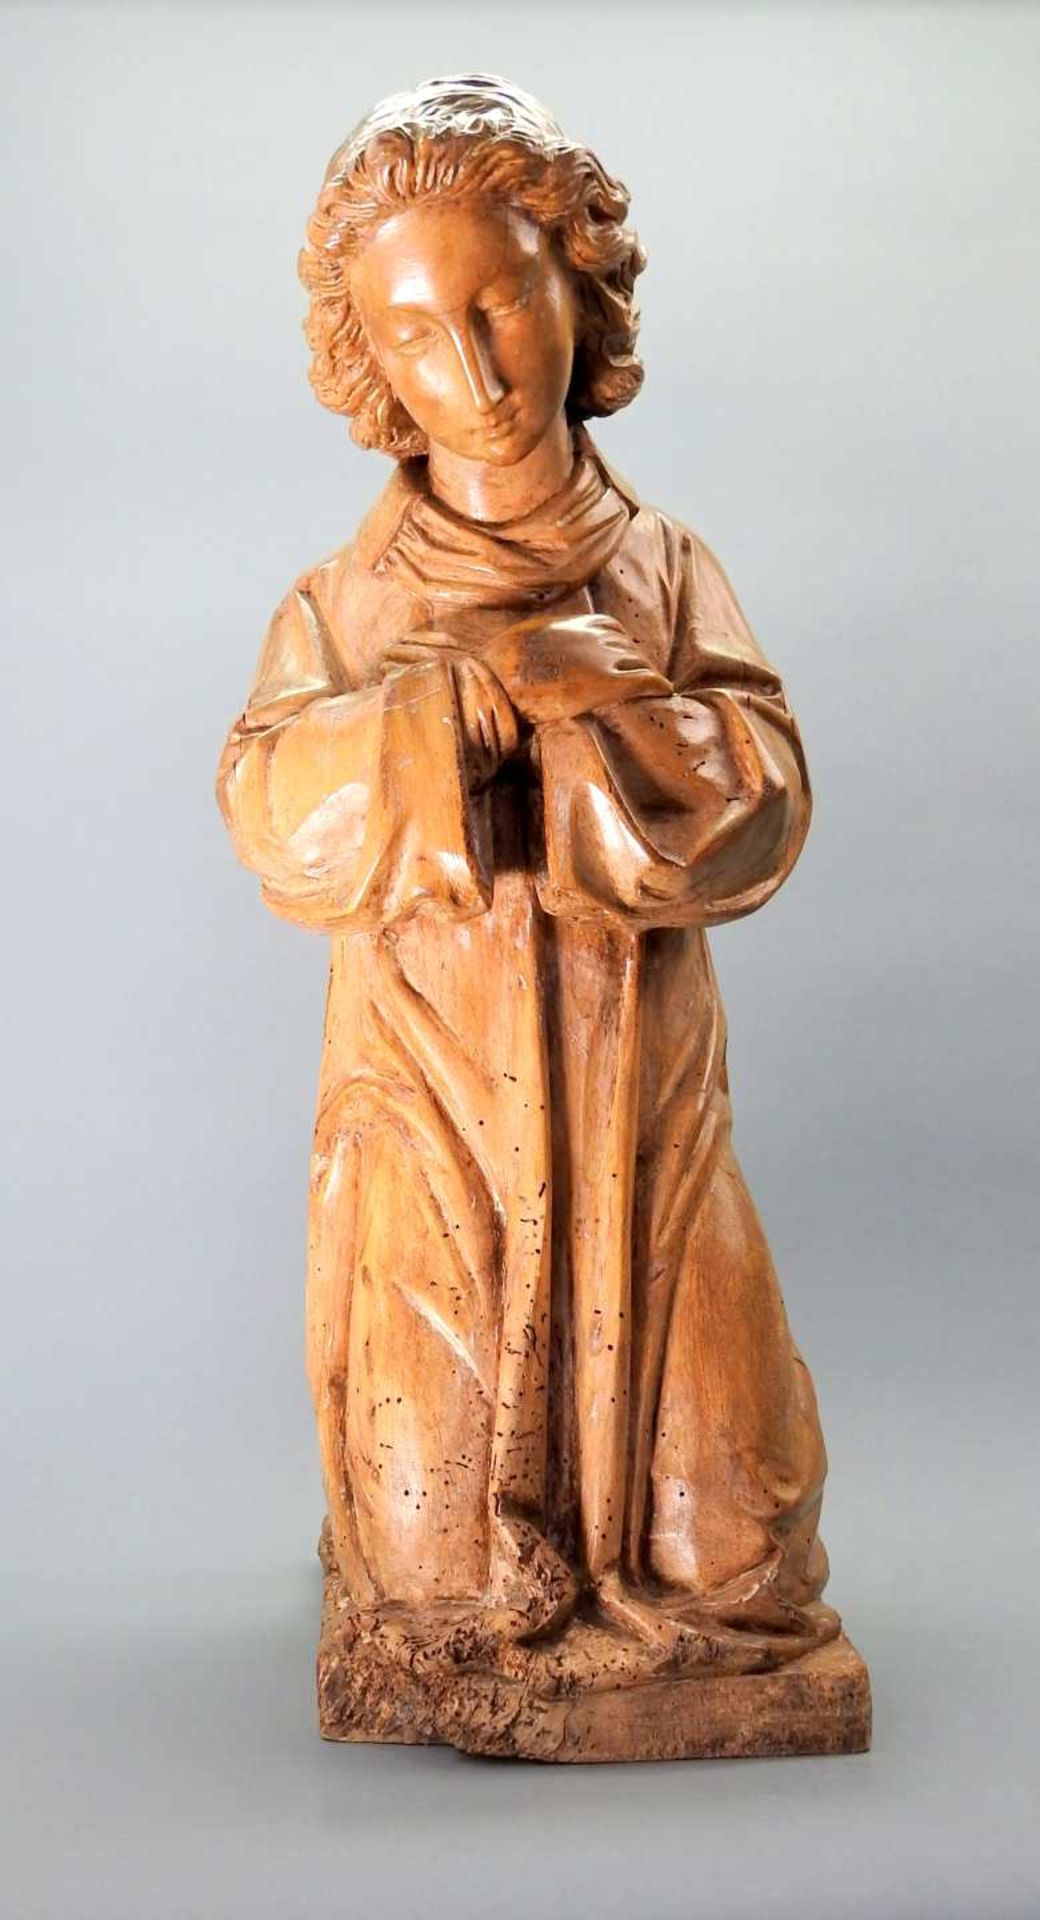 Kniende HeiligenfigurHolz, handgeschnitzt. Eine trauernde Heiligenfigur in gebeugter, - Bild 6 aus 6